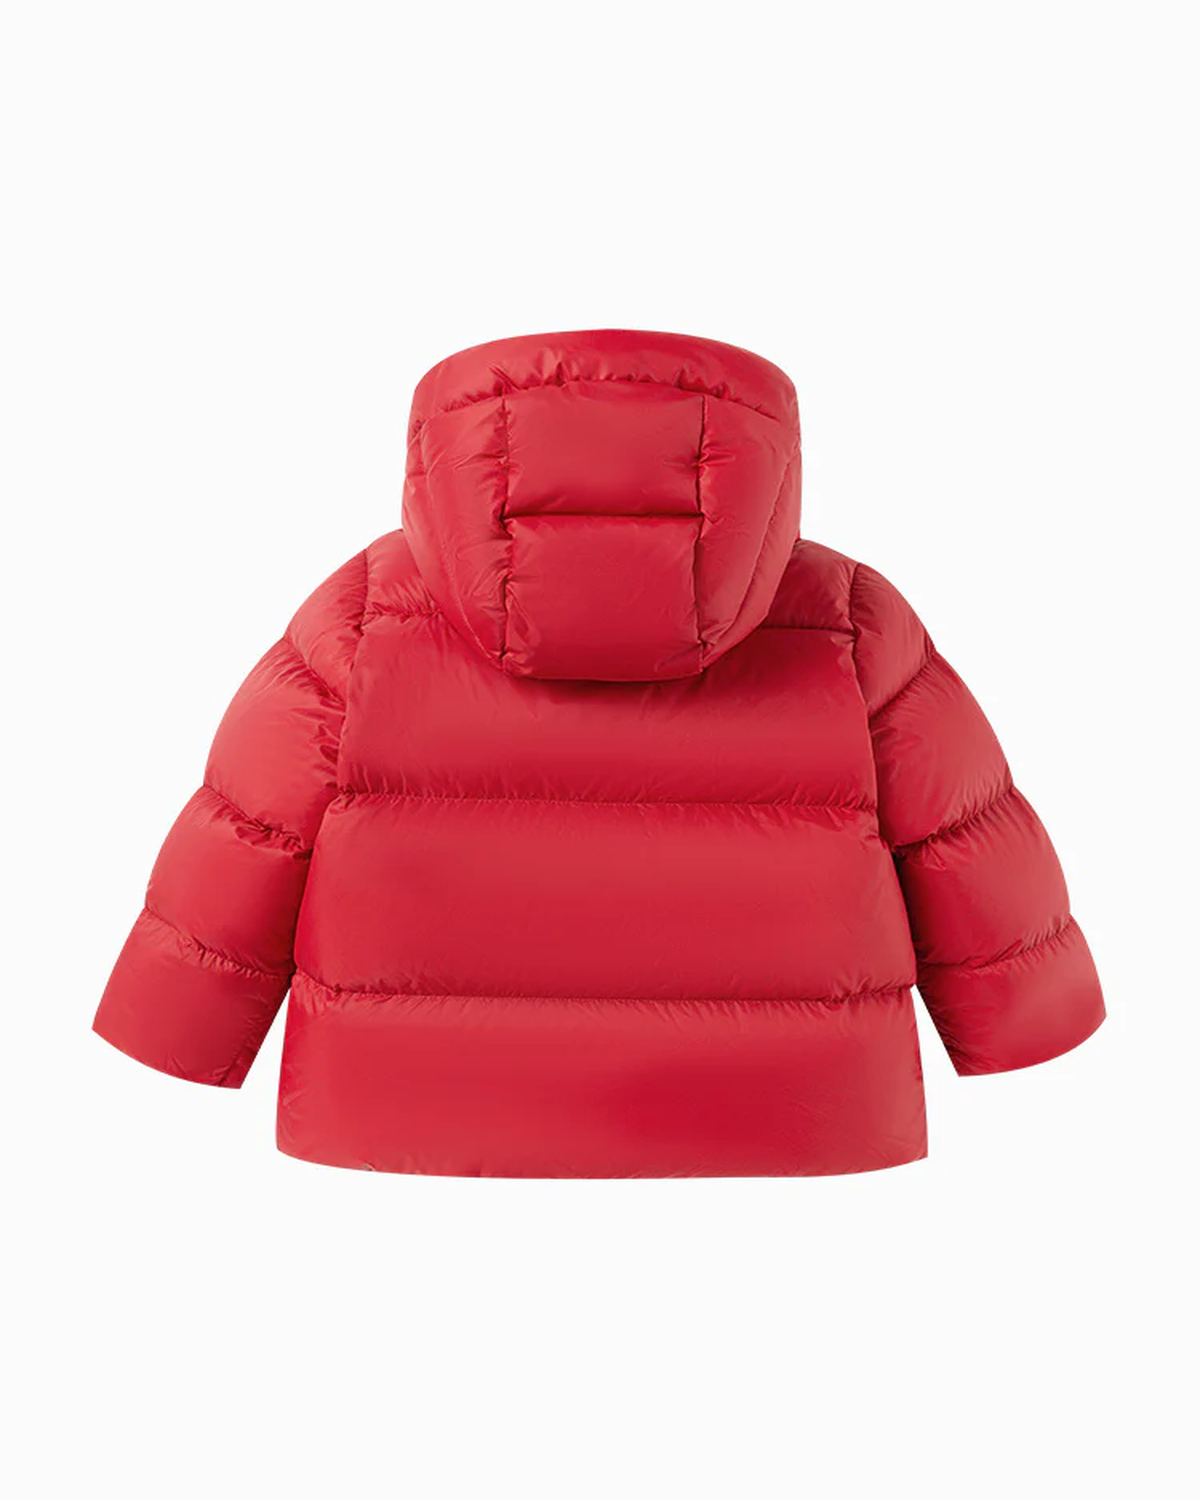 Balabala Toddler Unisex Chinese Red Down Jacket